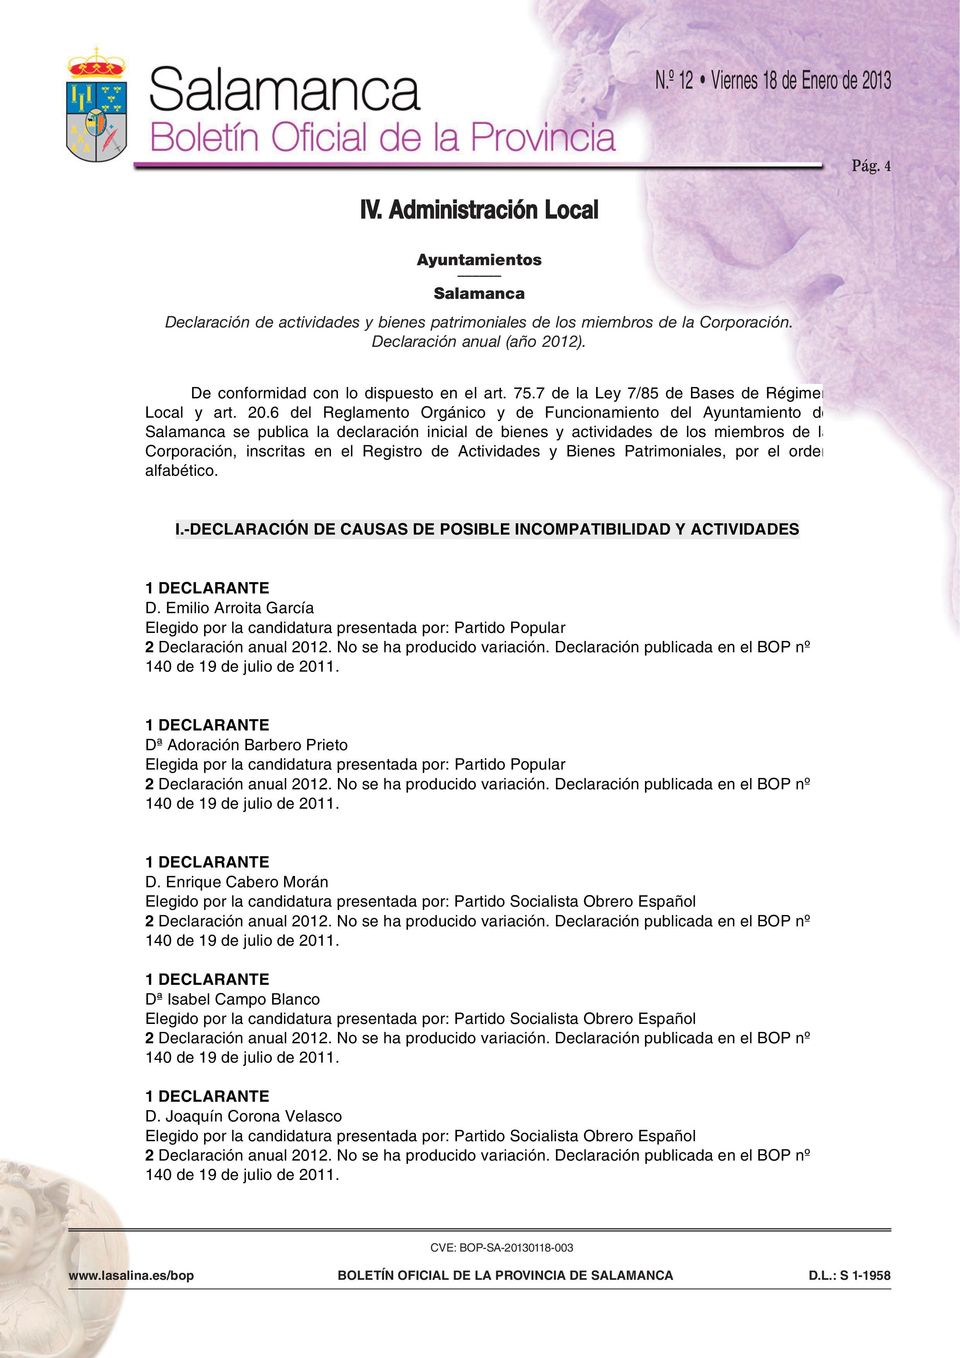 6 del Reglamento Orgánico y de Funcionamiento del Ayuntamiento de Salamanca se publica la declaración inicial de bienes y actividades de los miembros de la Corporación, inscritas